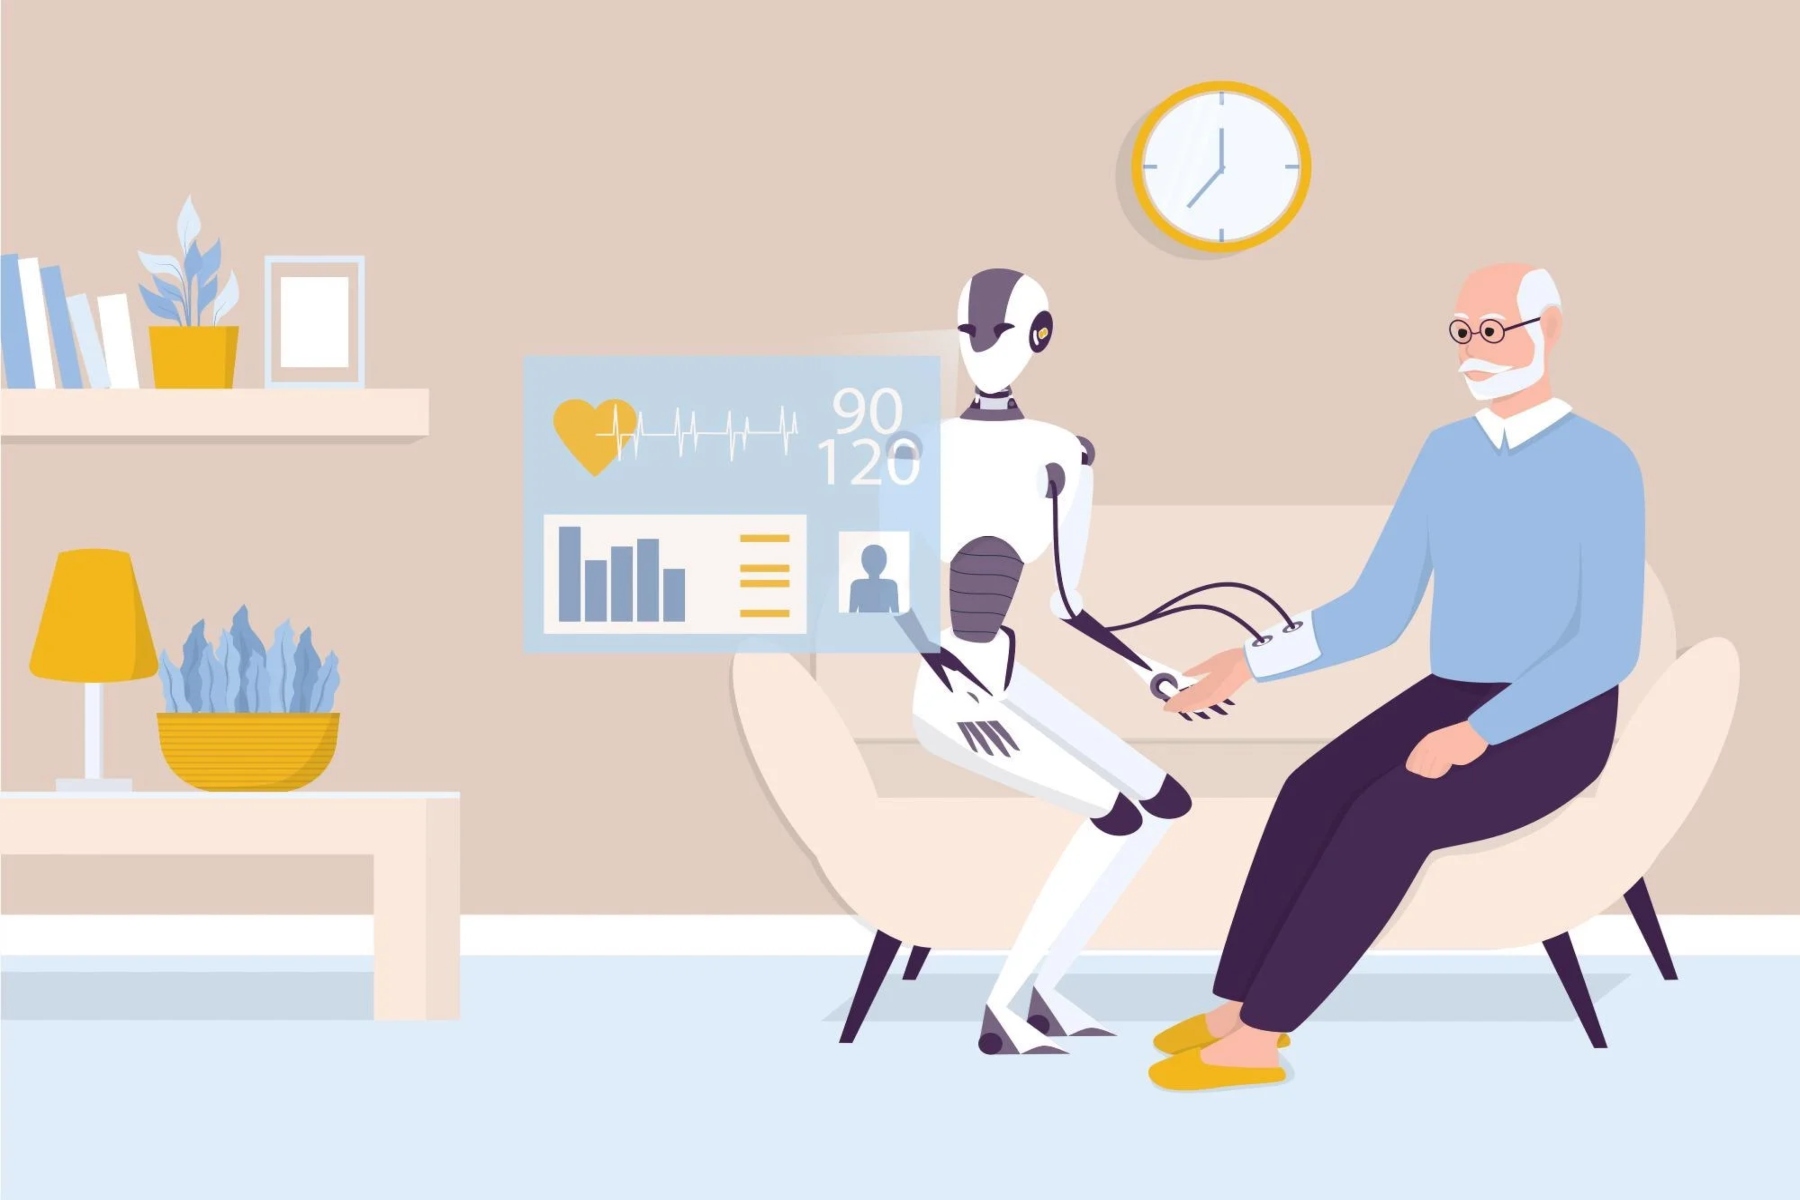 AI ηλικιωμένοι: Ποιος ο ρόλος της τεχνητής νοημοσύνης στην φροντίδα των ηλικιωμένων;